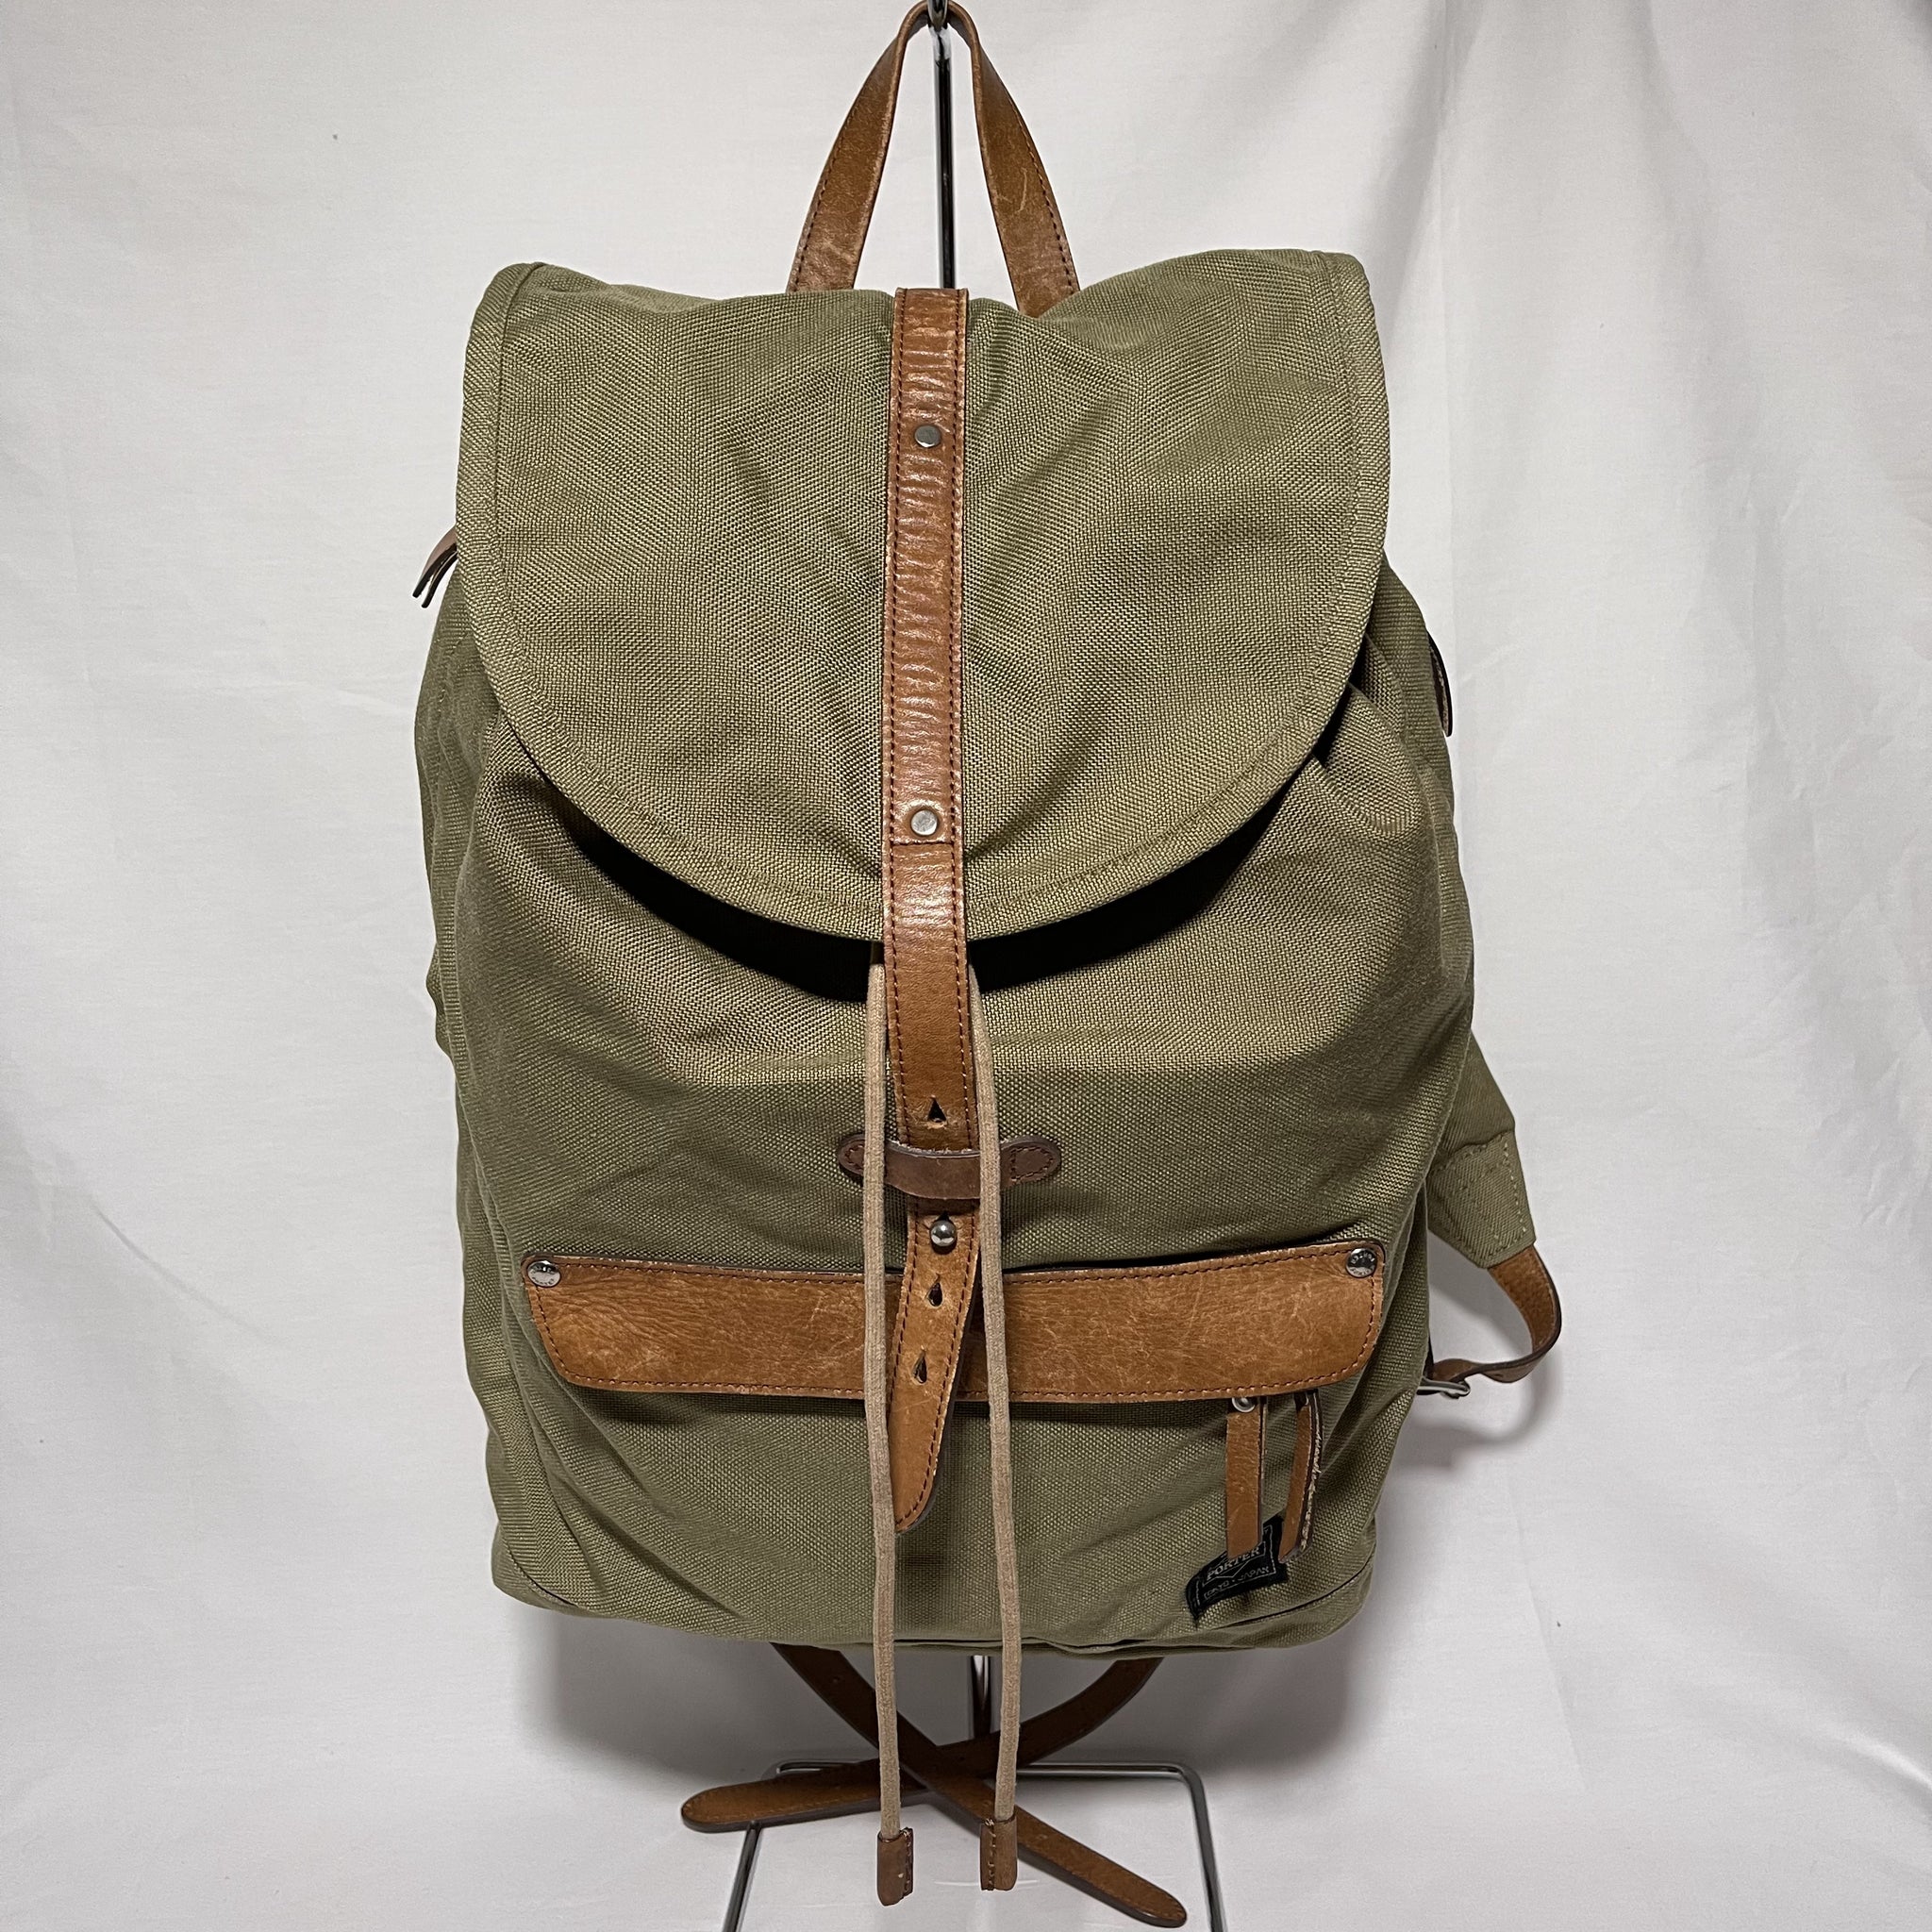 Porter Bridge Rucksack Backpack - Olive 橄欖綠色帆布背囊